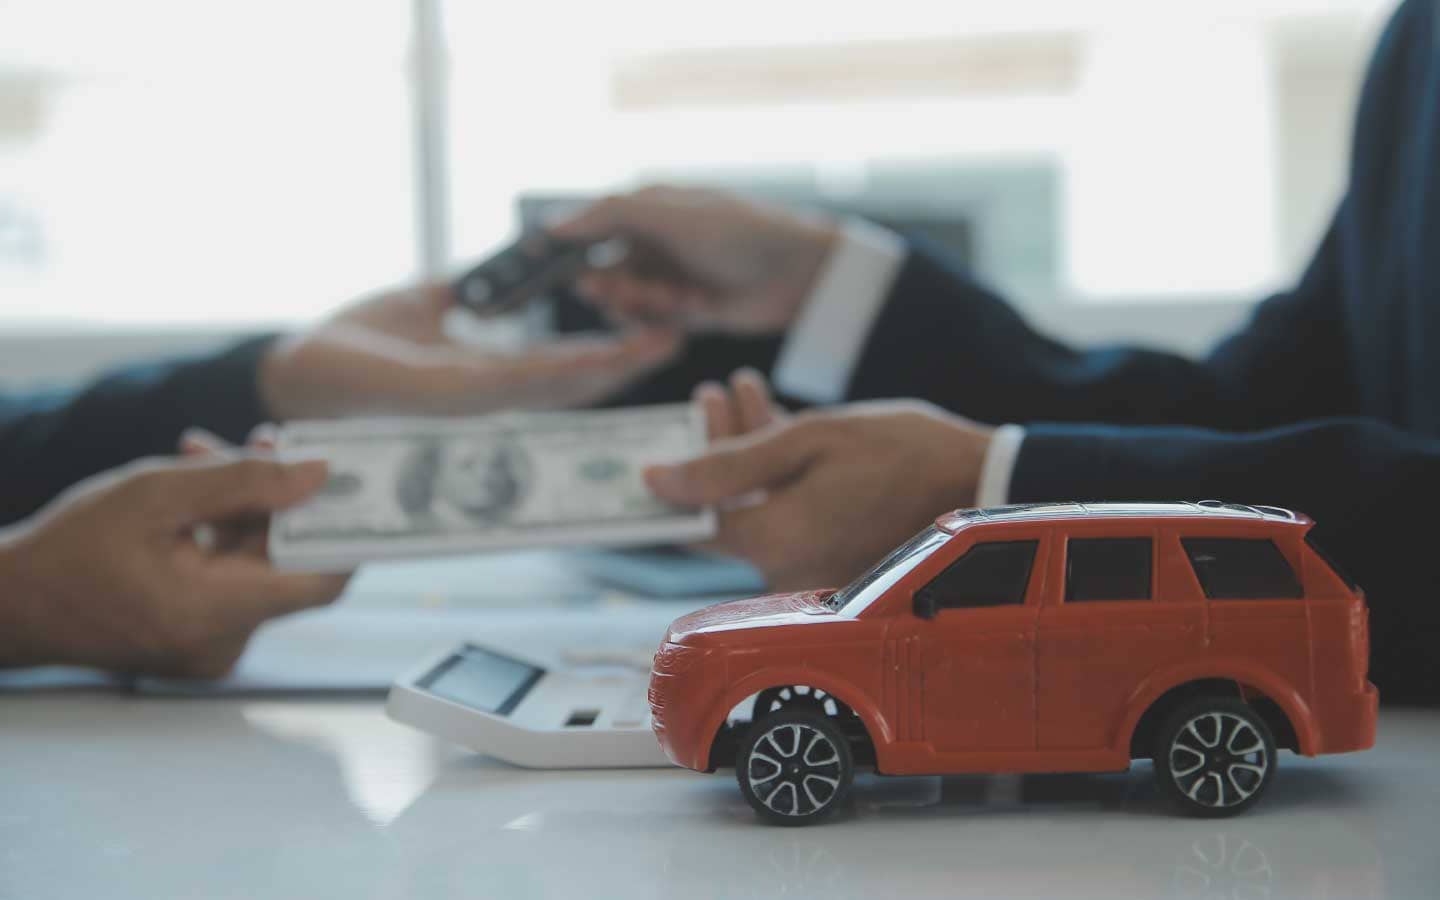 立達汽車借款，您值得信賴的金融借貸機構。我們擁有多年的豐富經驗，致力於為客戶提供專業、便捷且靈活的汽車借款方案。